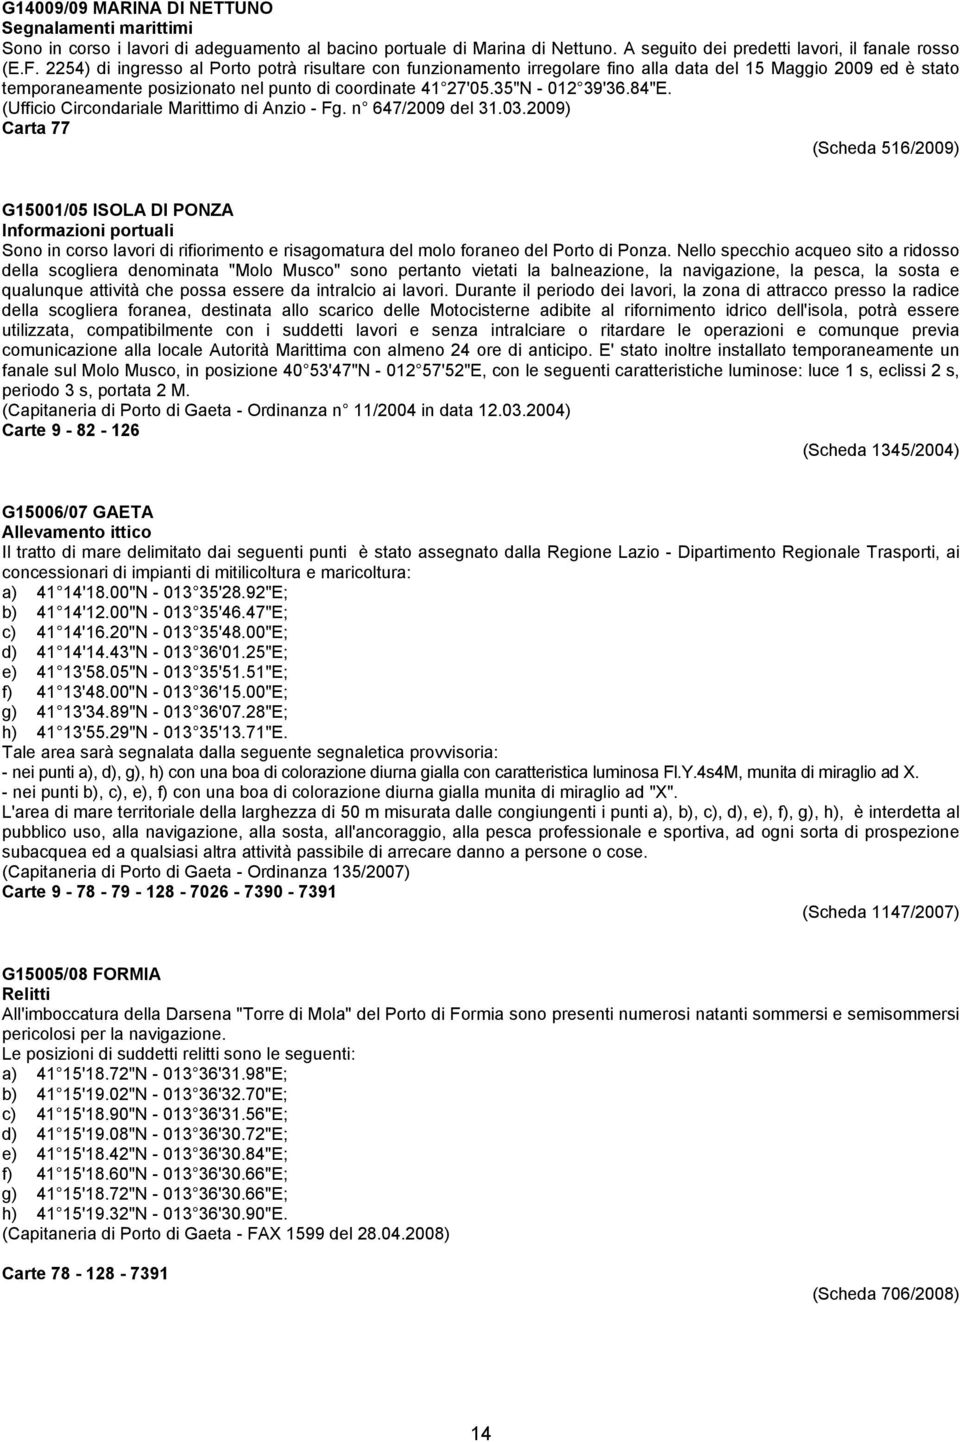 (Ufficio Circondariale Marittimo di Anzio - Fg. n 647/2009 del 31.03.